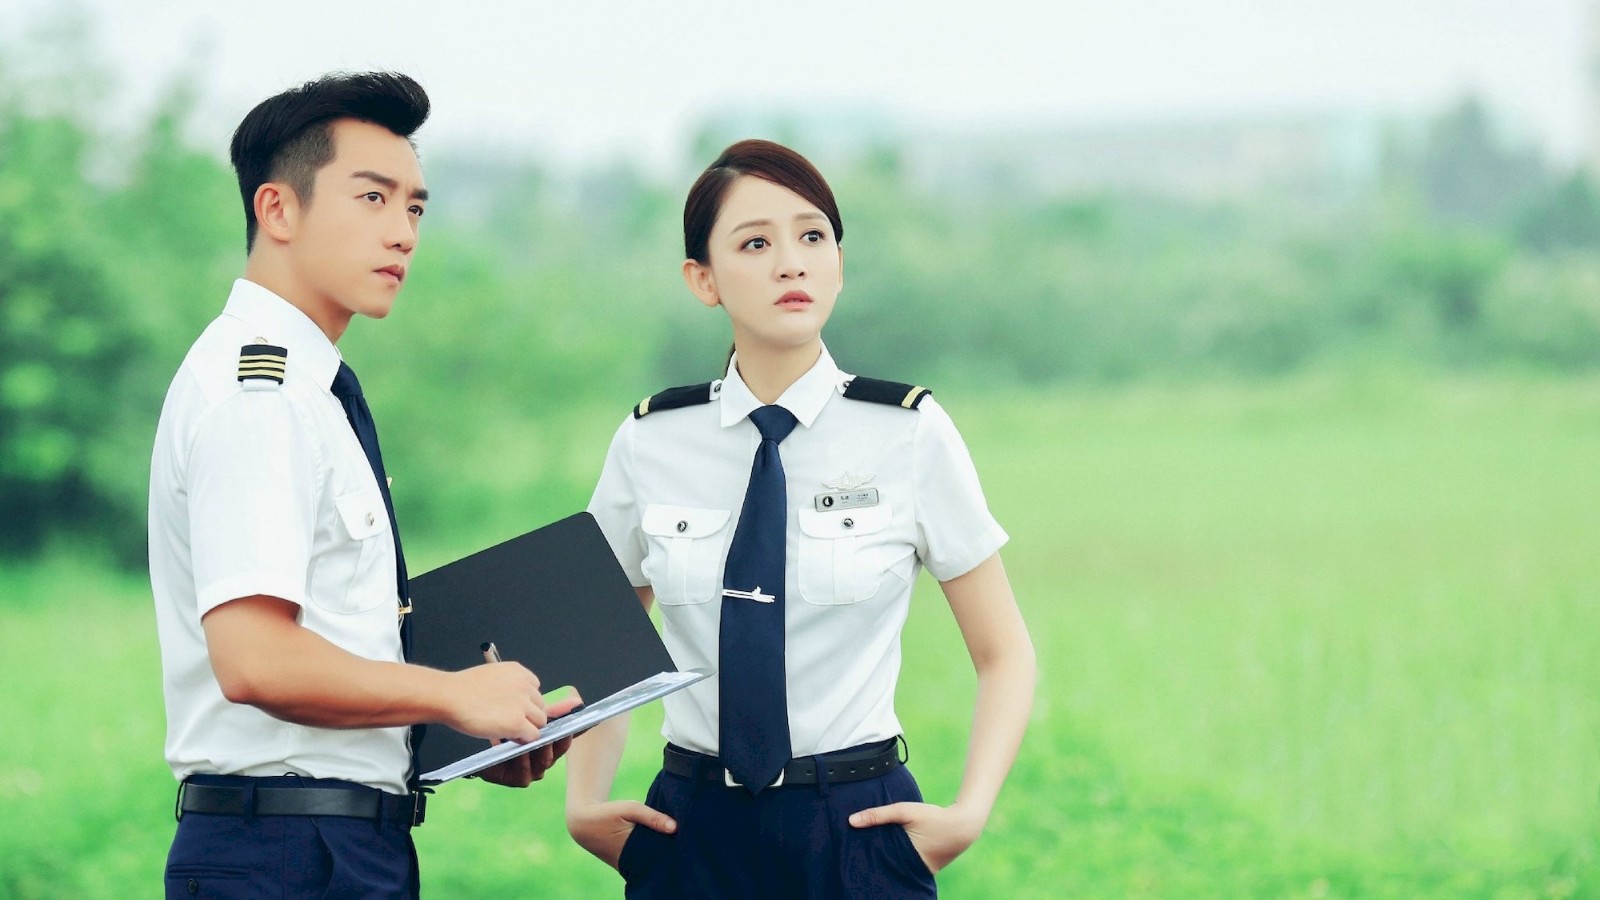 《壮志高飞》:郑恺与陈乔恩首次合作,演绎飞行员的浪漫爱情